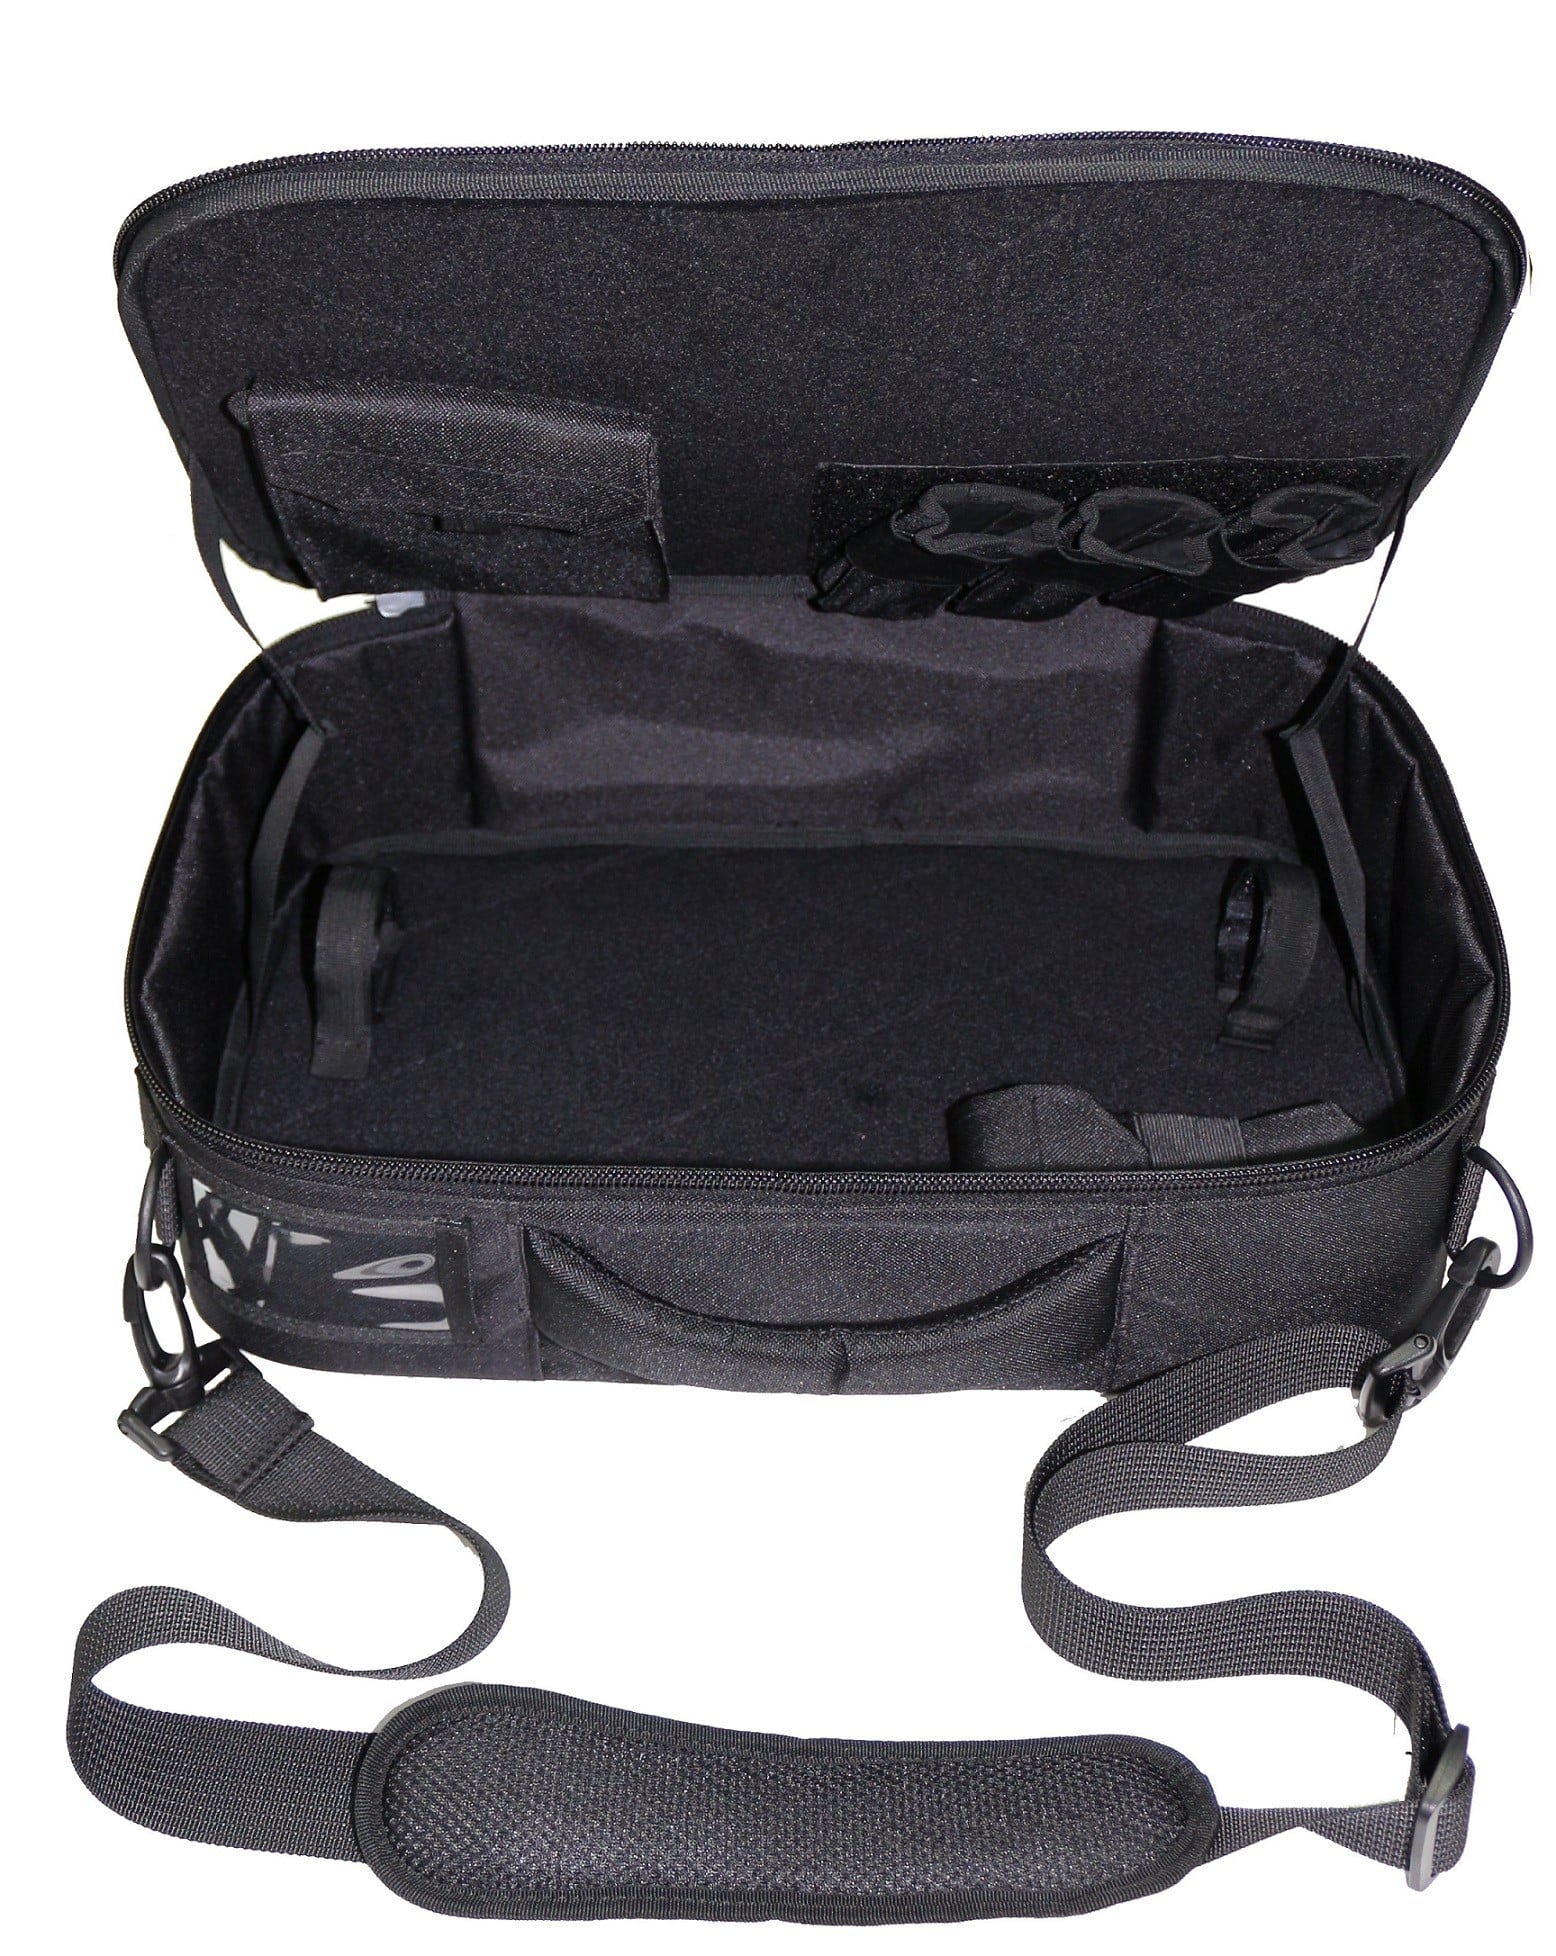 KPOS Bag Fab Defense Carry Bag for KPOS - Bulls Tactical